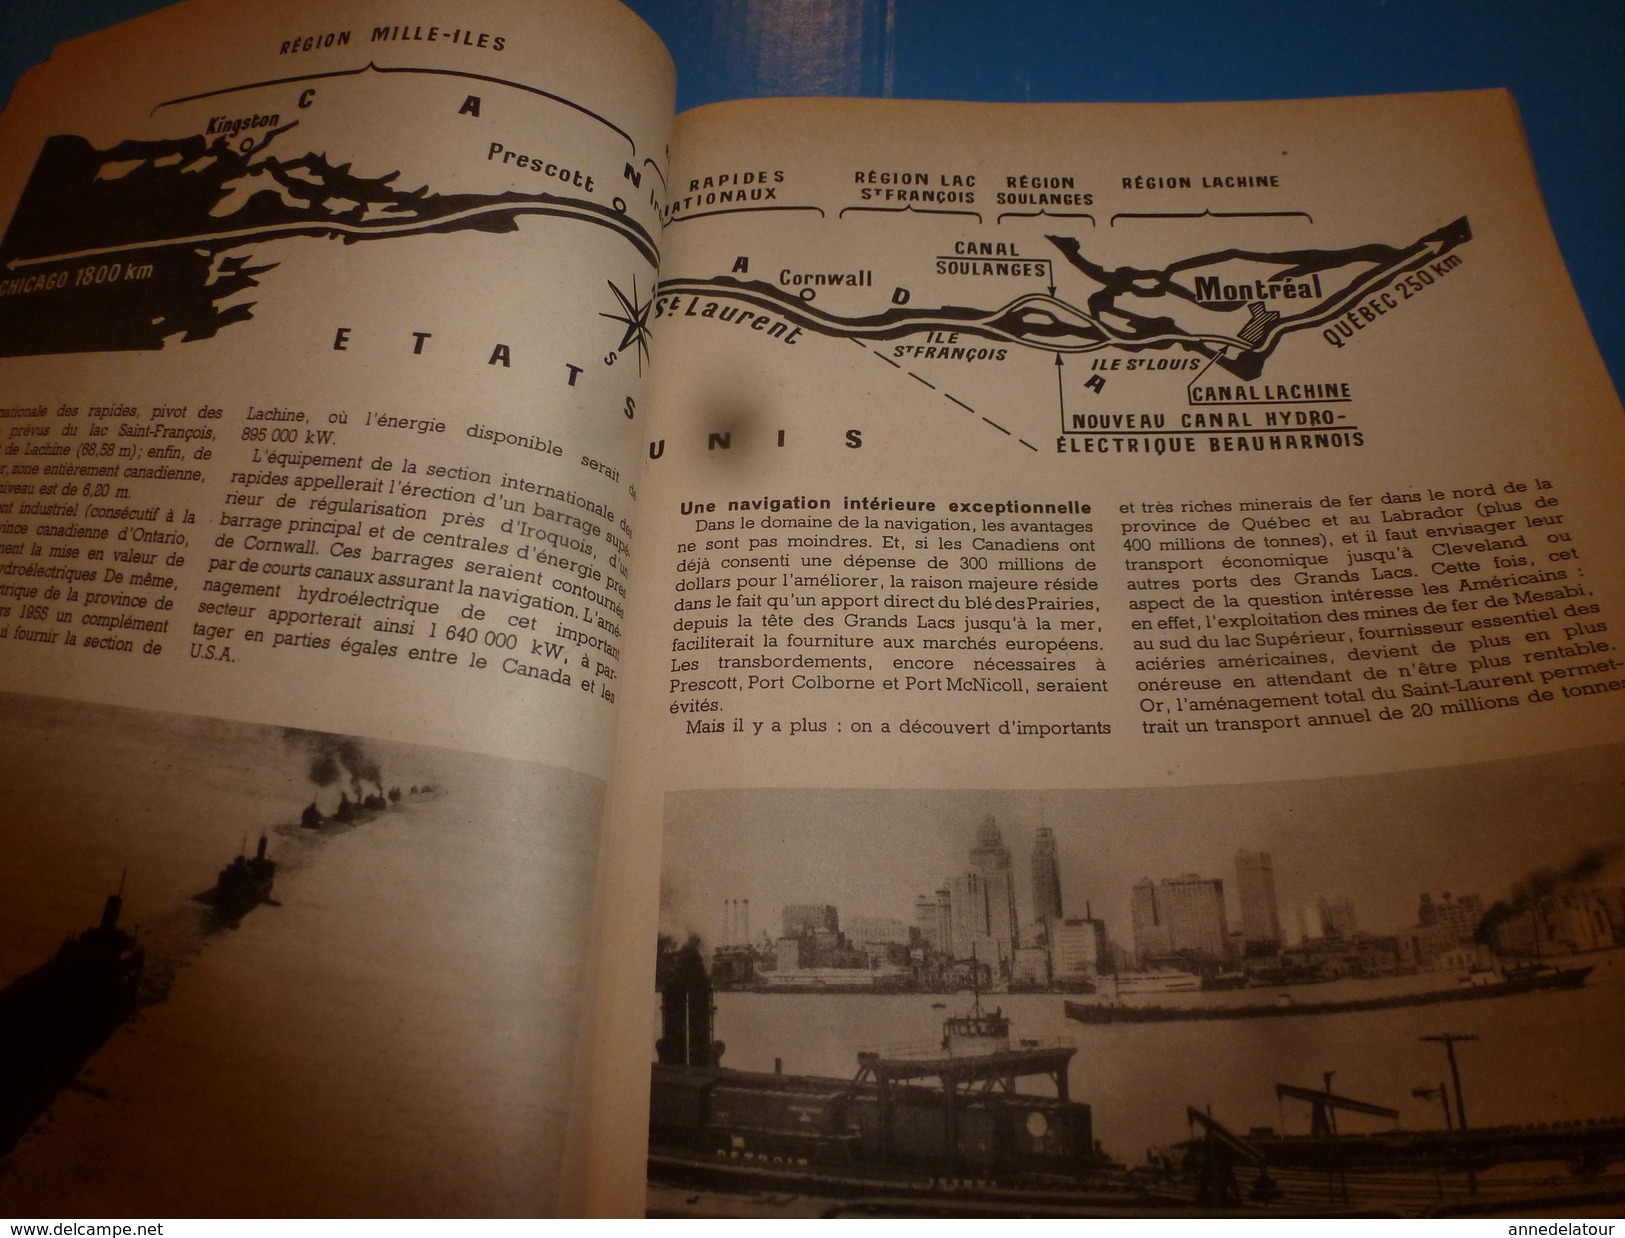 1953 SCIENCE Et VIE  N° 427--->Le Canal De Saint-Laurent; Les Curieuses Moeurs Du COUCOU Parasite Mais Utile; Etc - Wissenschaft